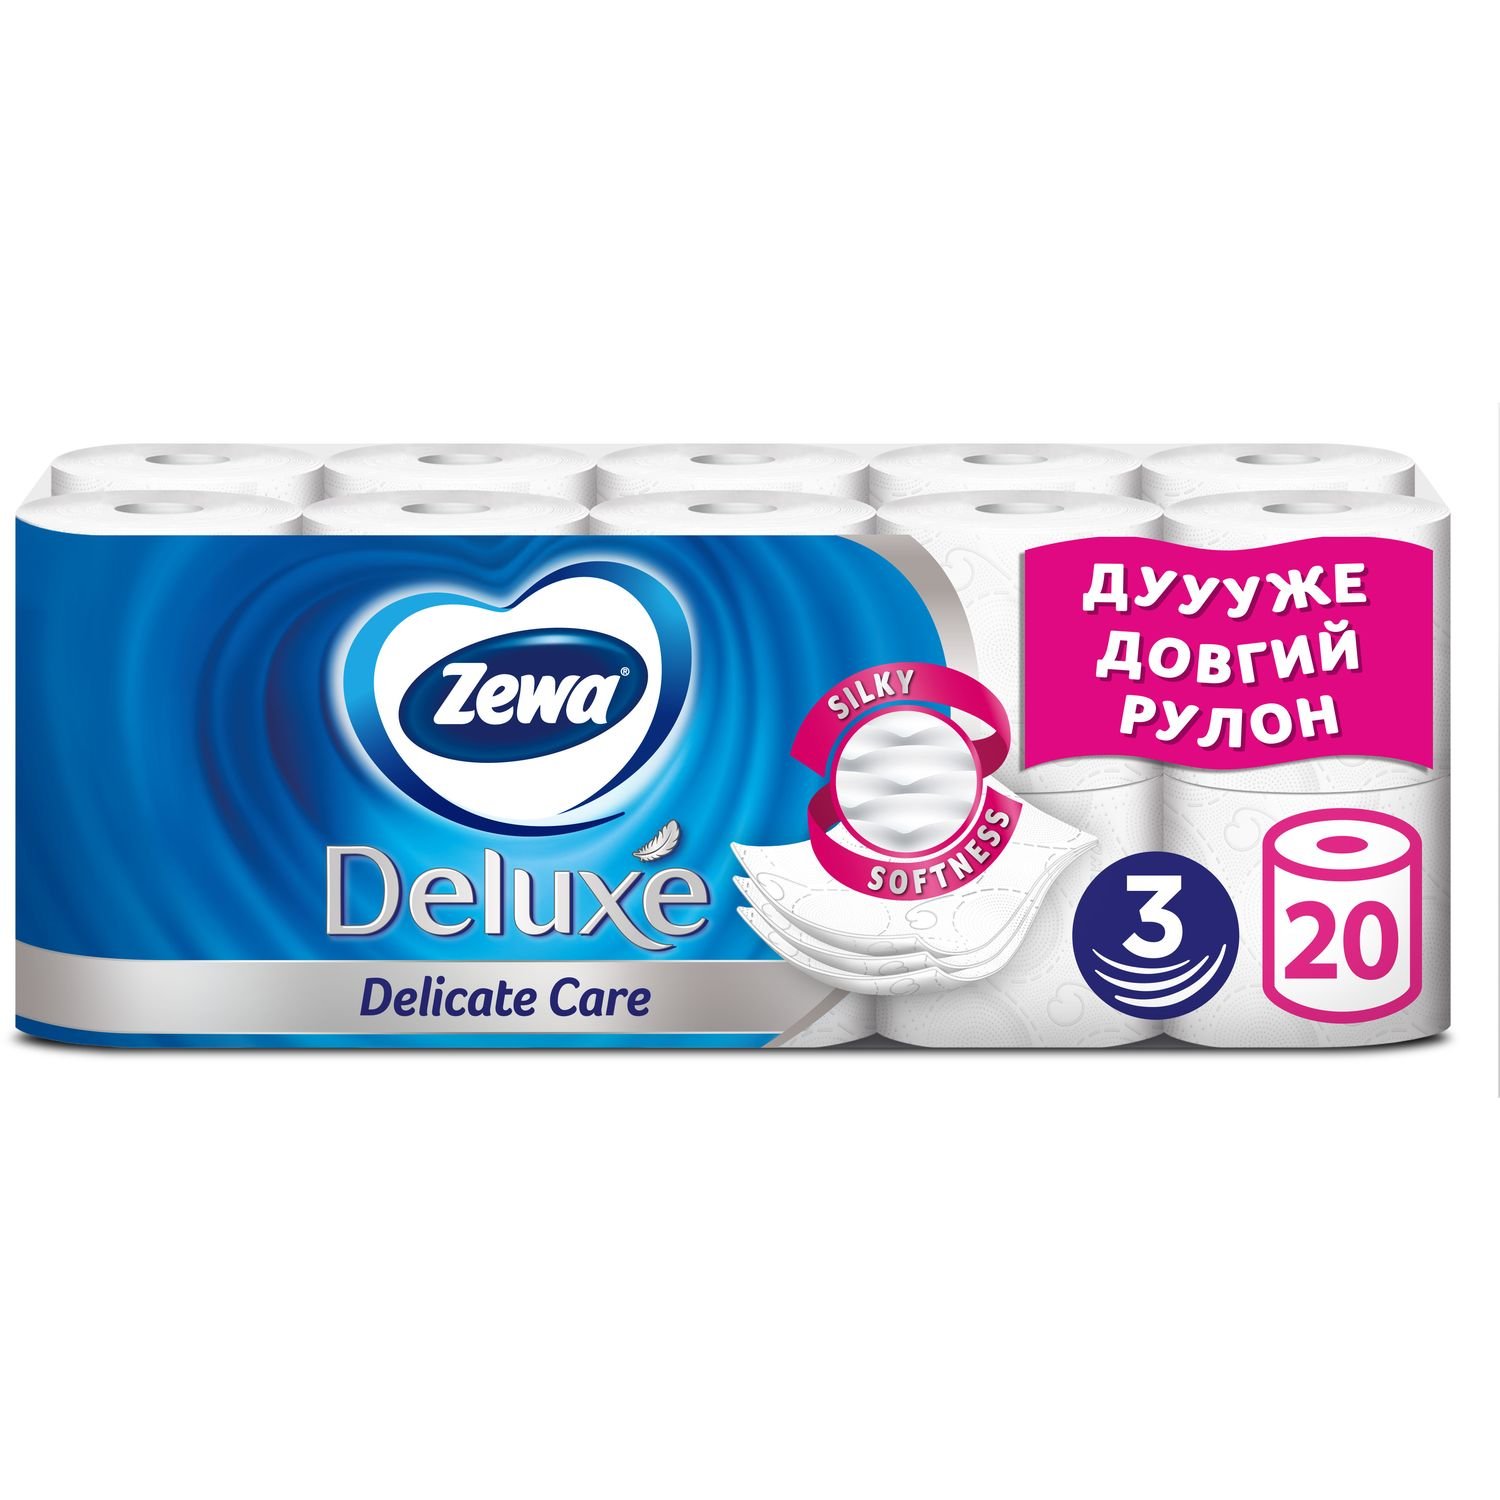 Туалетная бумага Zewa Deluxe, трехслойная, 20 рулонов - фото 1